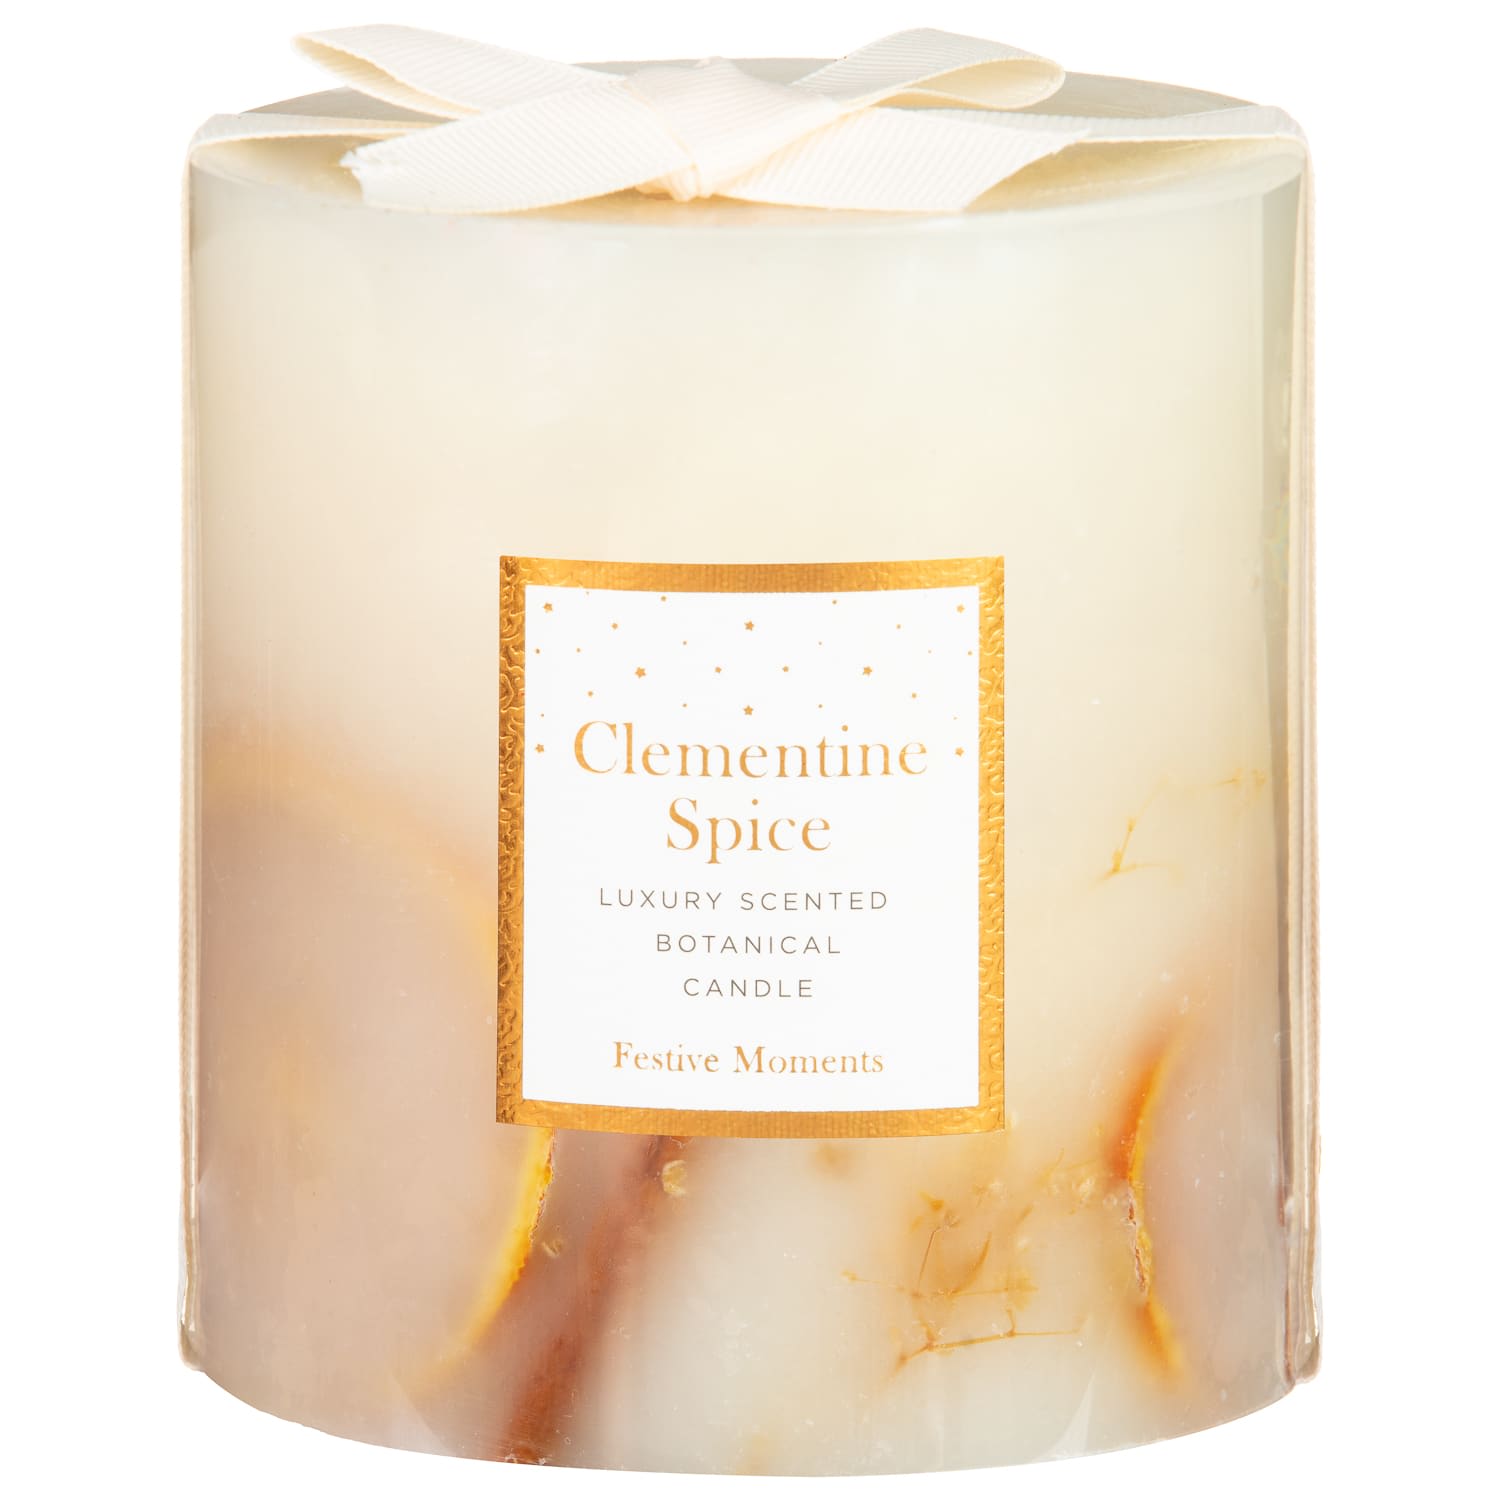 Die ähnlich riechende Clementine Spice-Kerze von B&M kostet nur 6 £